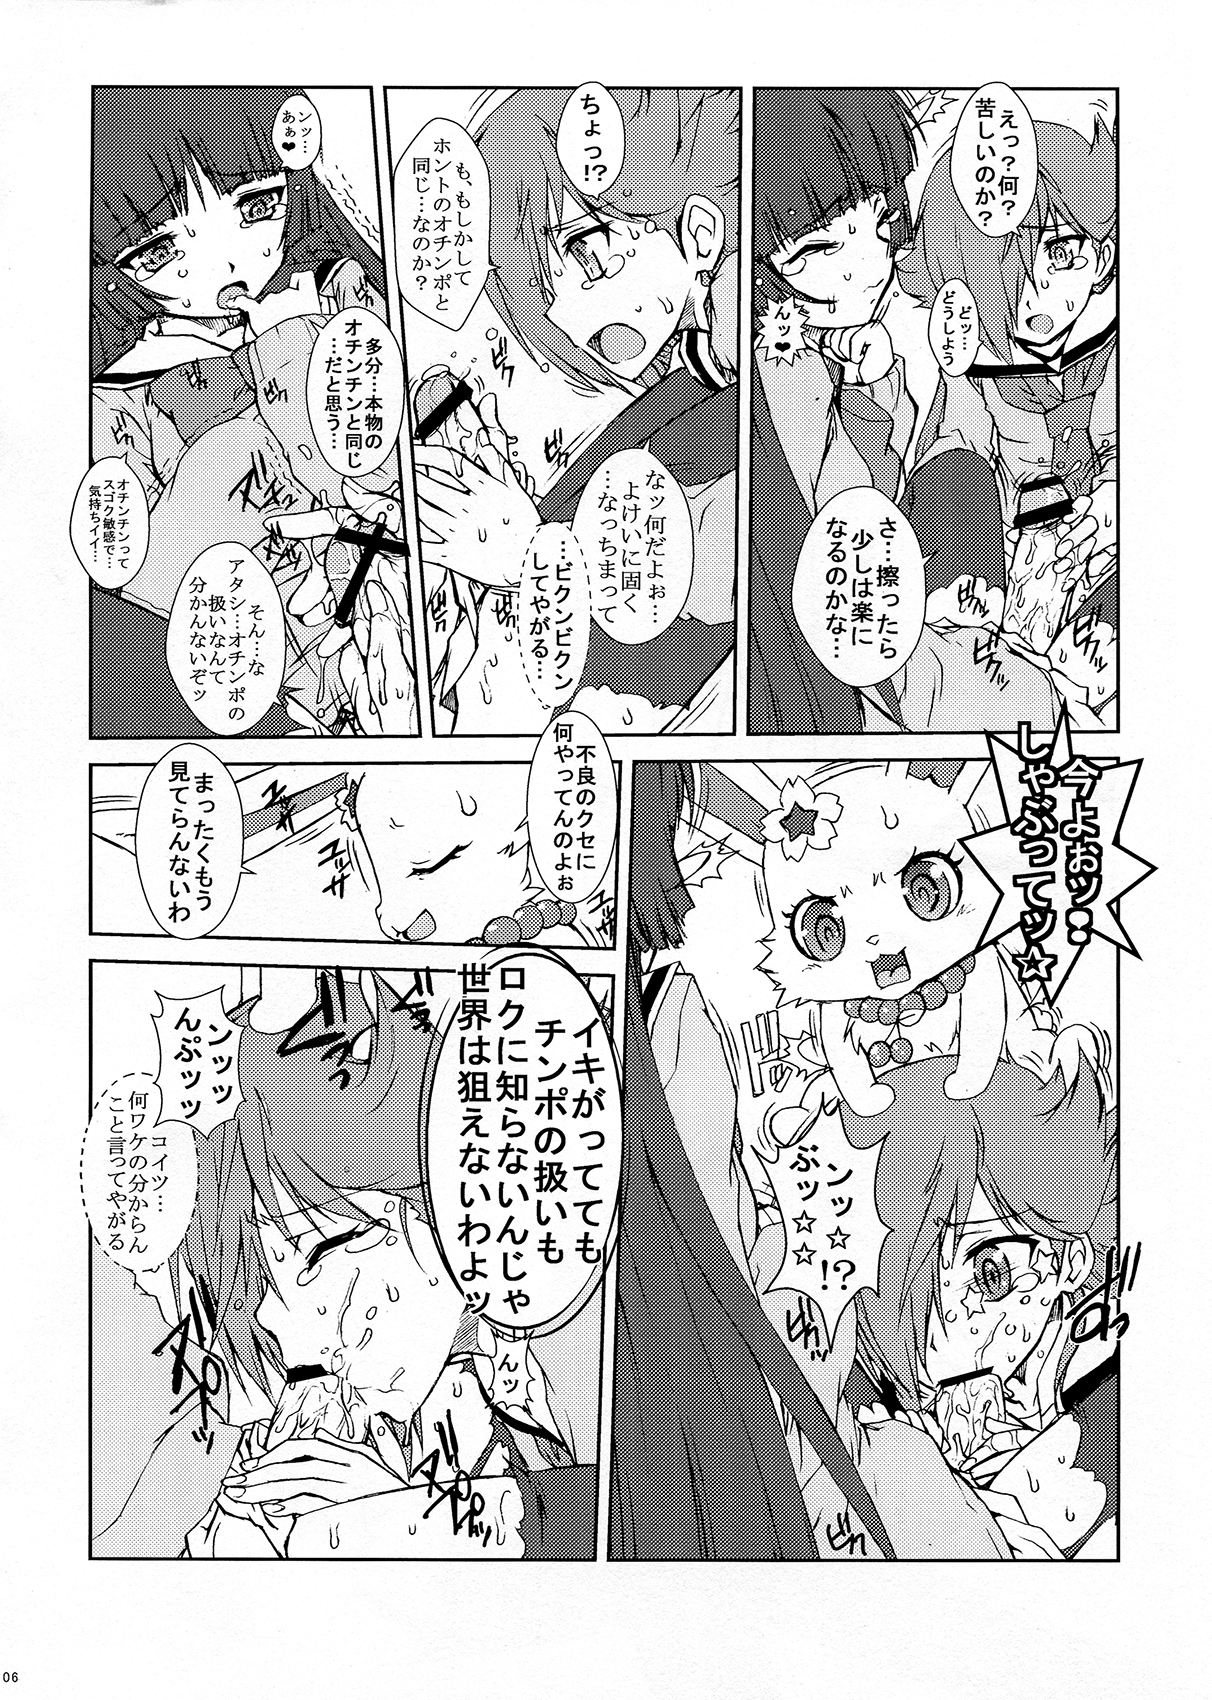 Read Escargot Club Jyubaori Masyumaro Moai Hentai Porns Manga And